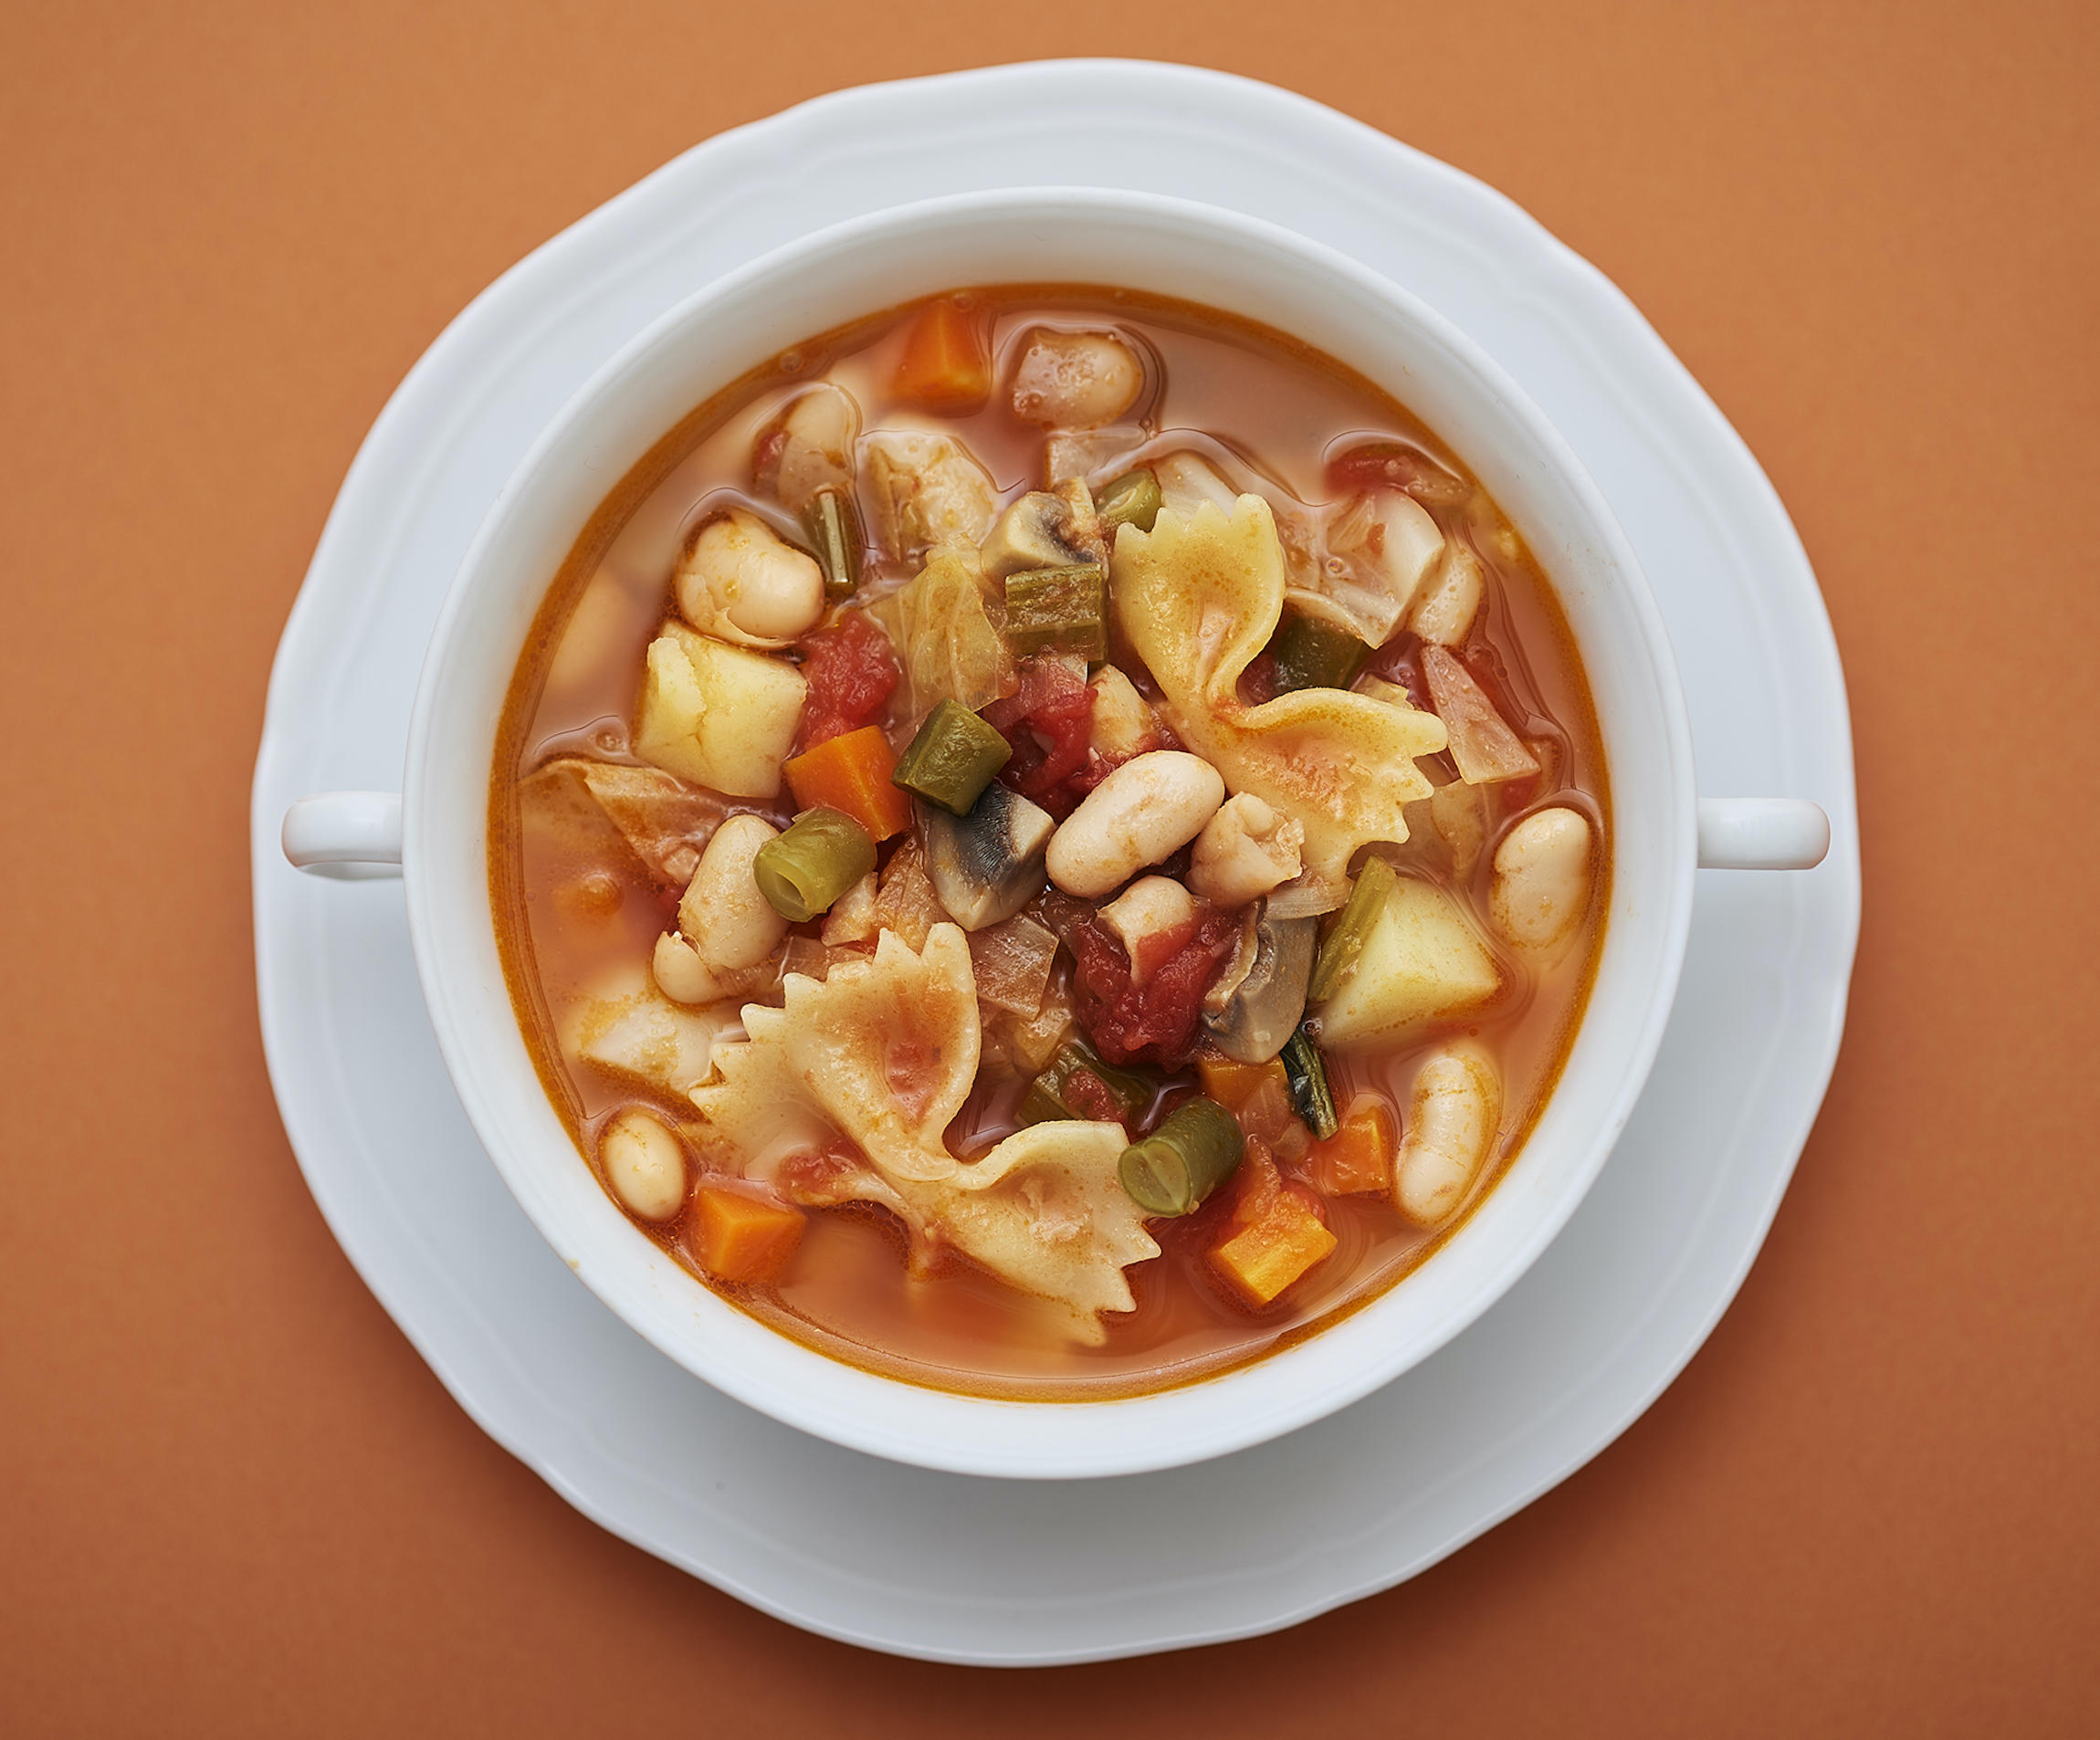 ミネストローネ でスープ上手になる スープをじっくりつくる 手軽につくる 公式 Dancyu ダンチュウ